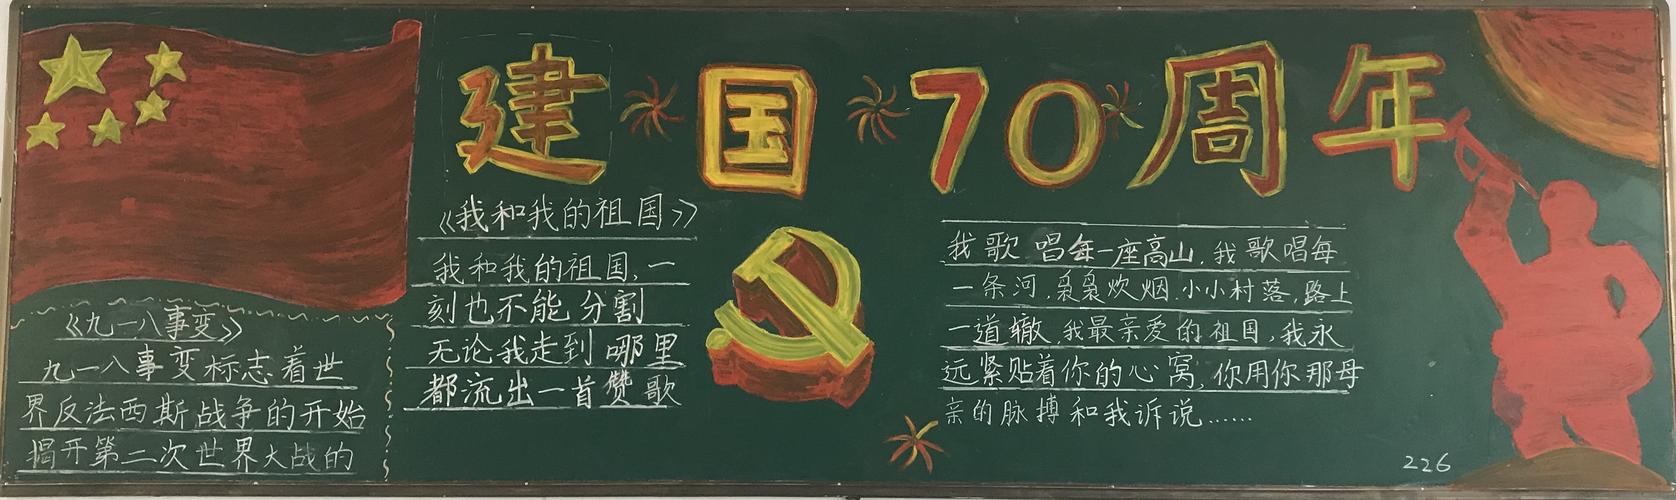 运城格致中学喜迎70华诞欢度国庆黑板报展